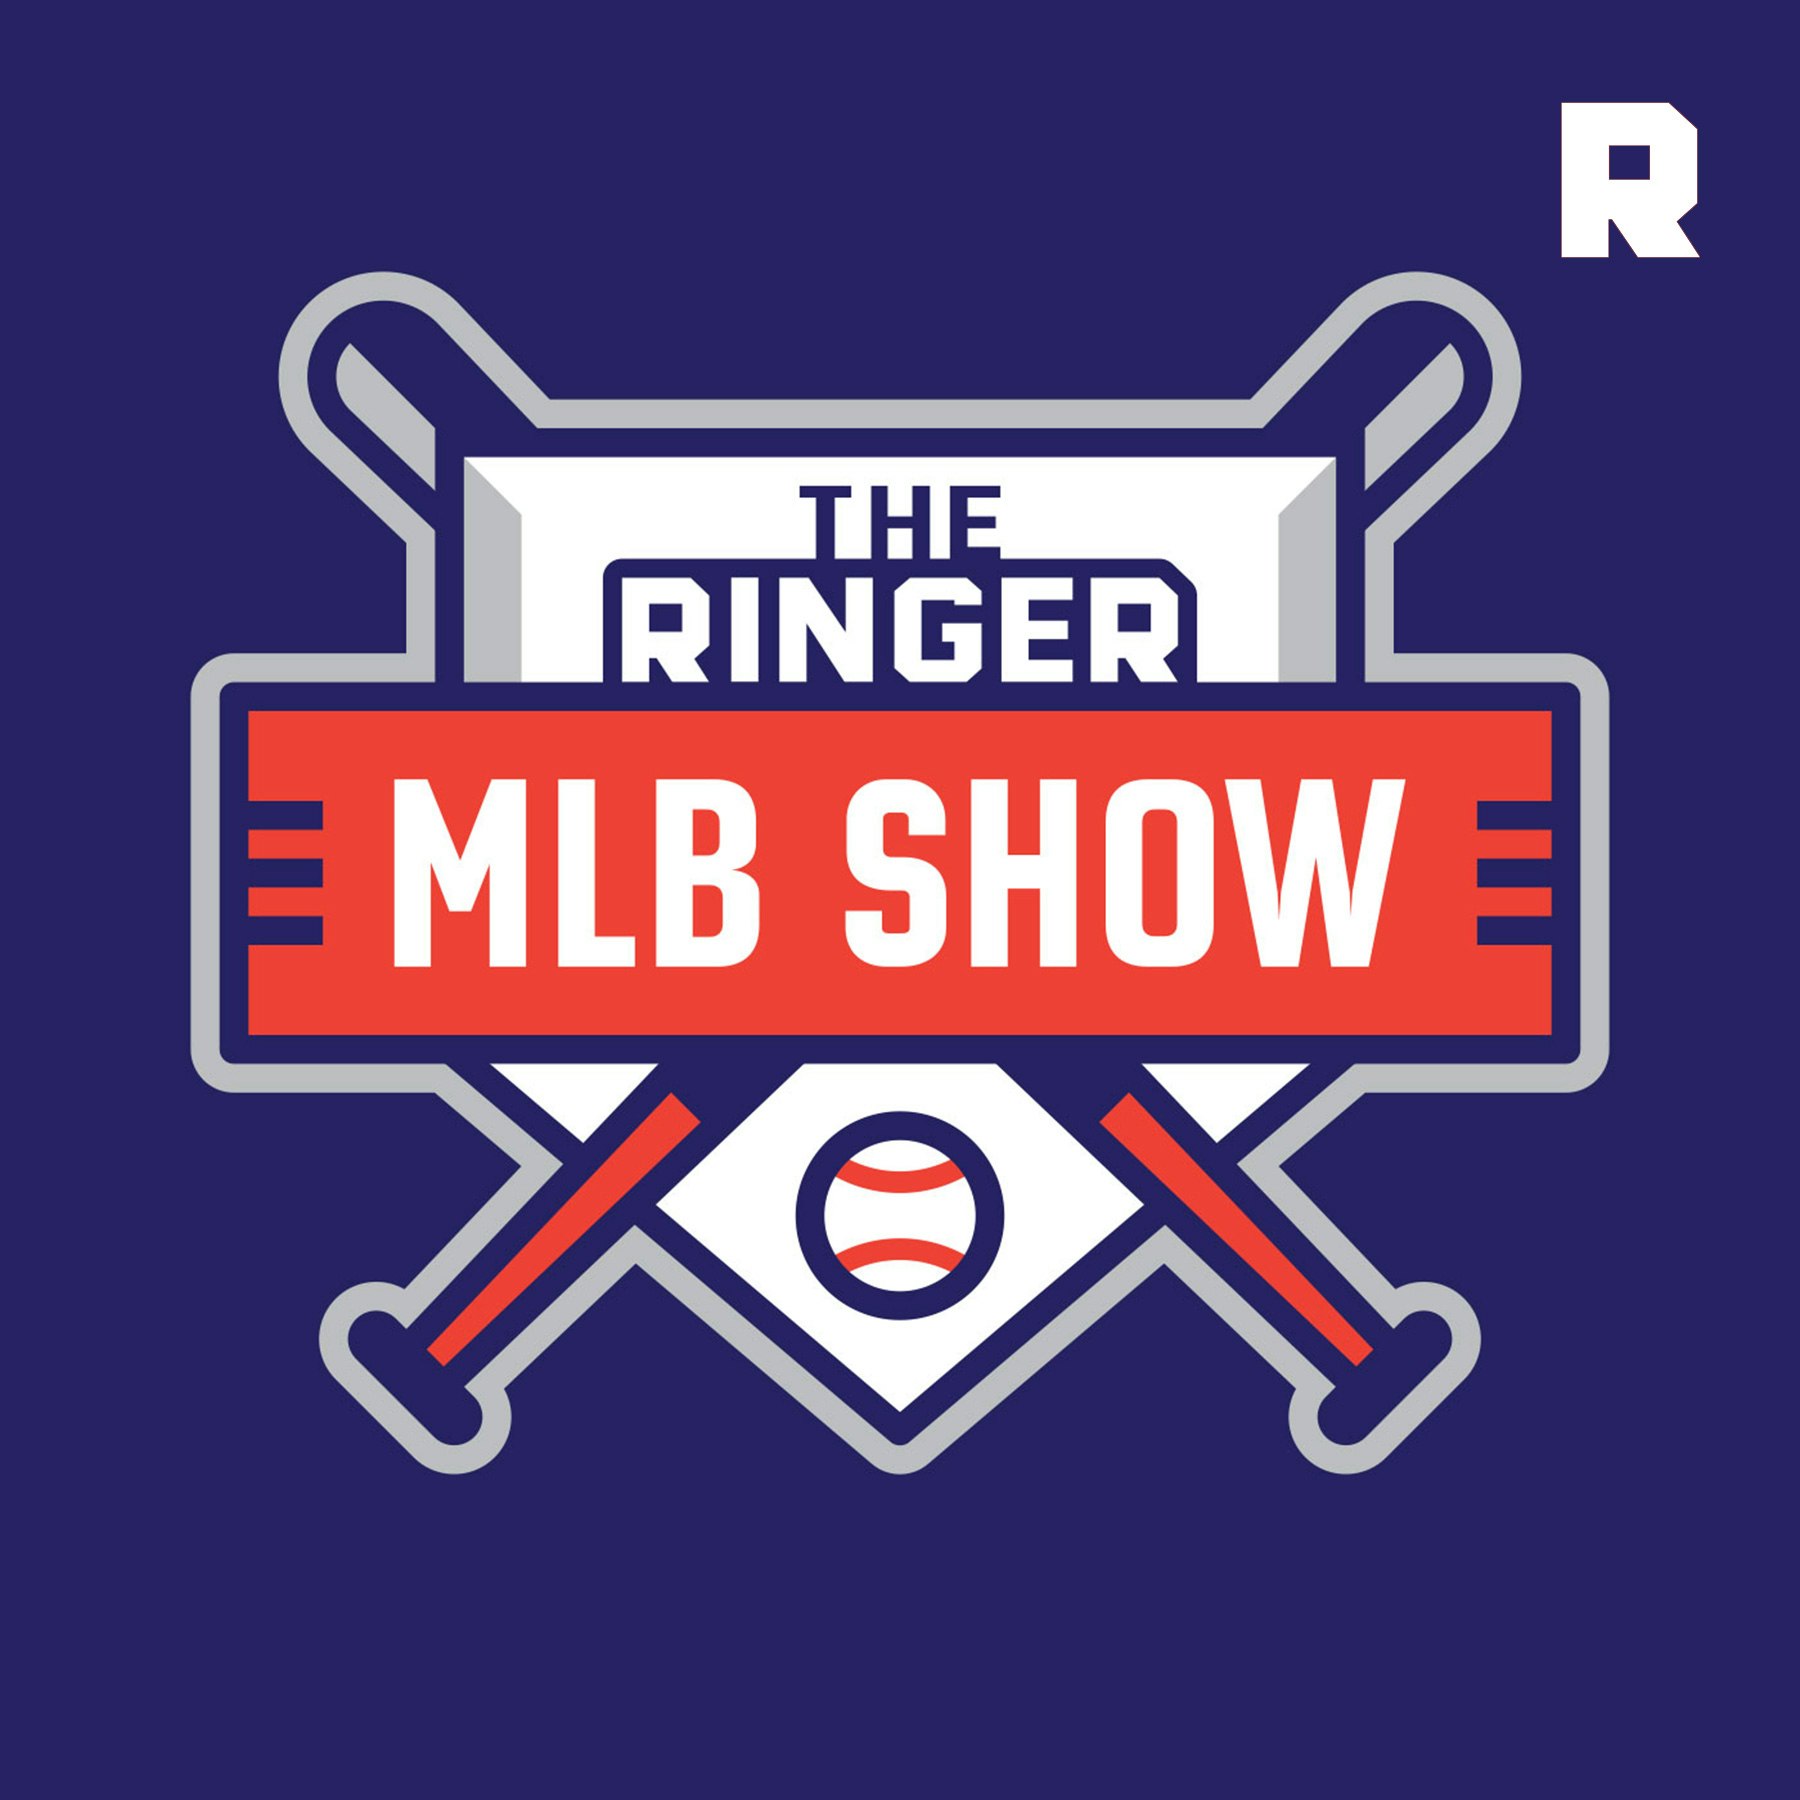 The Ringer MLB Show podcast